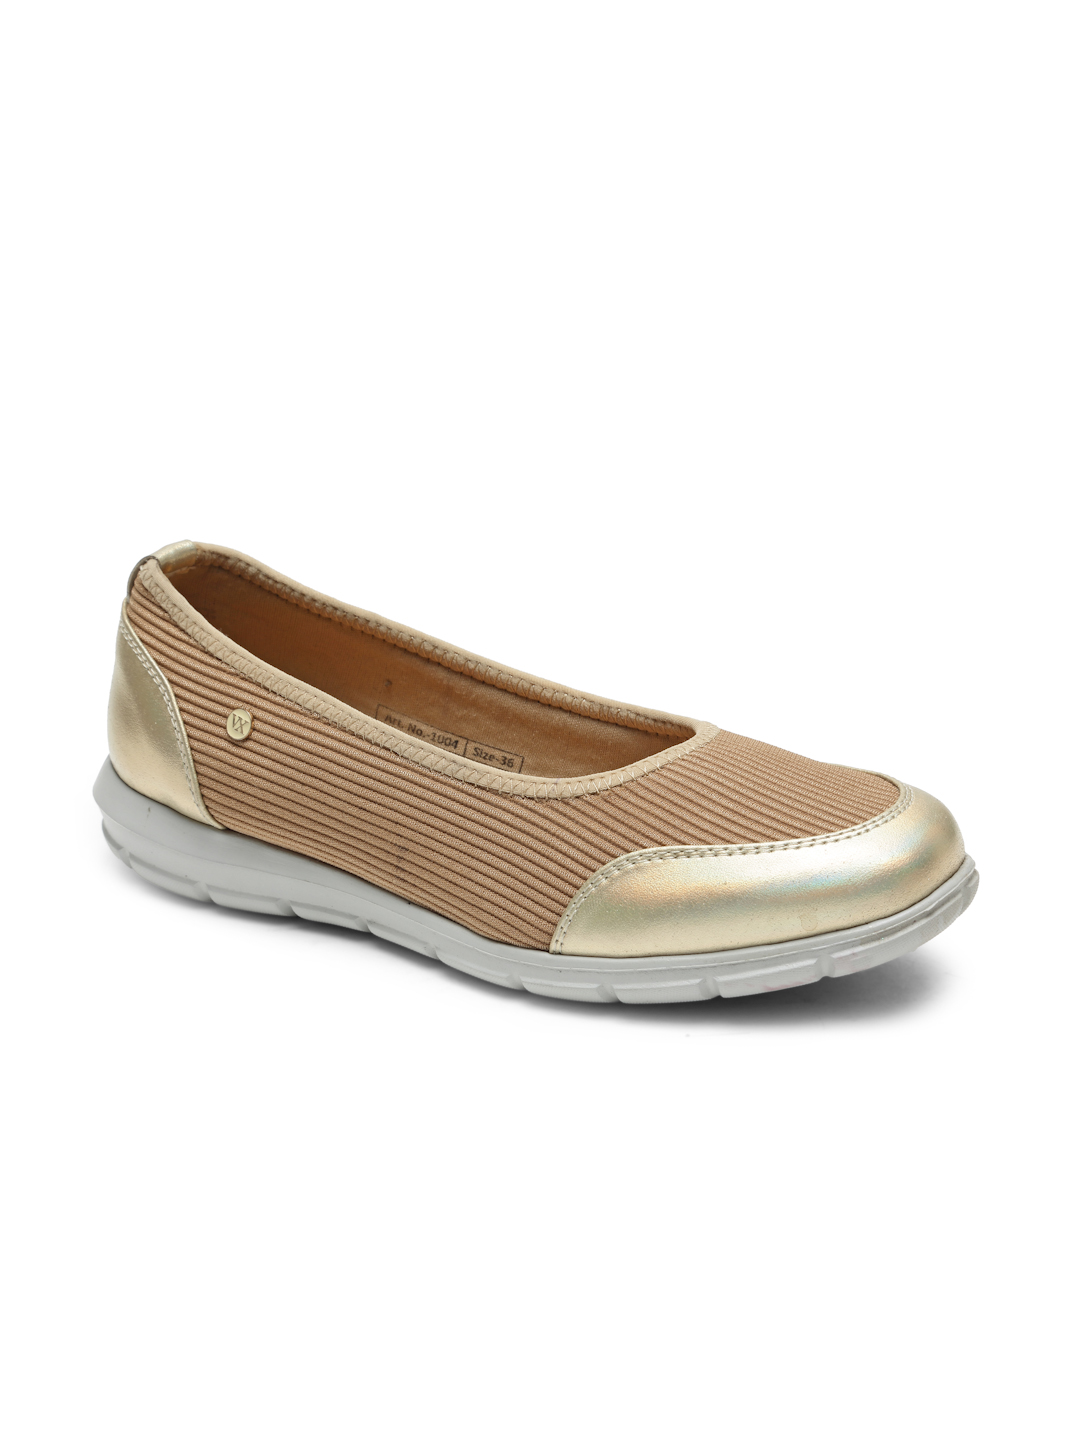 Buy Von Wellx Germany Comfort Women's Beige Casual Shoes Alice Online in Nagpur